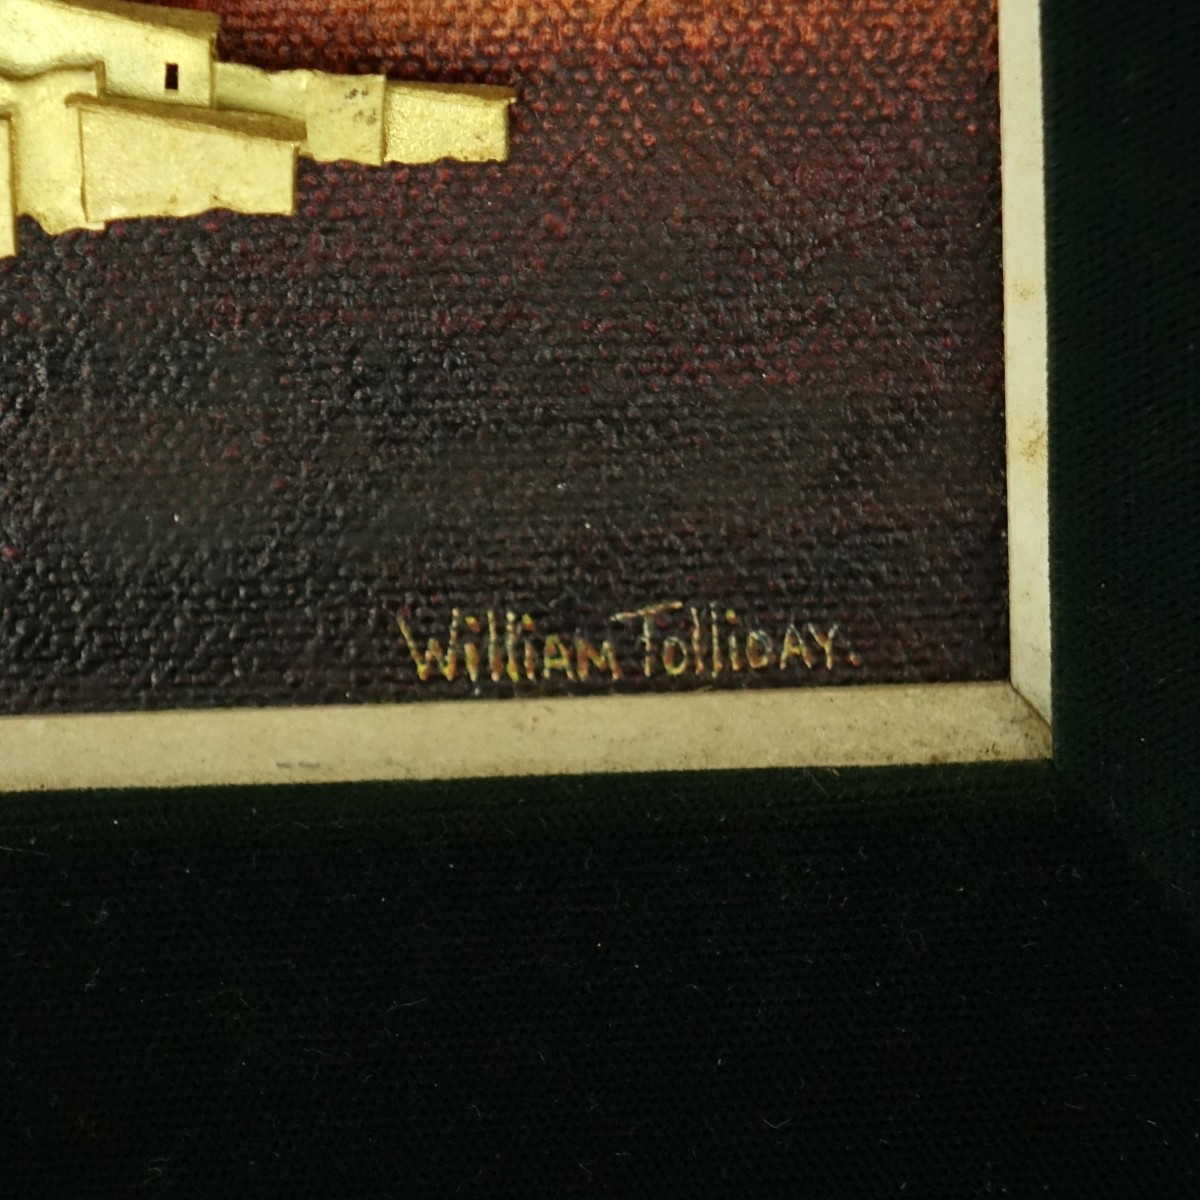 William Tolliday, British O/C with Gold